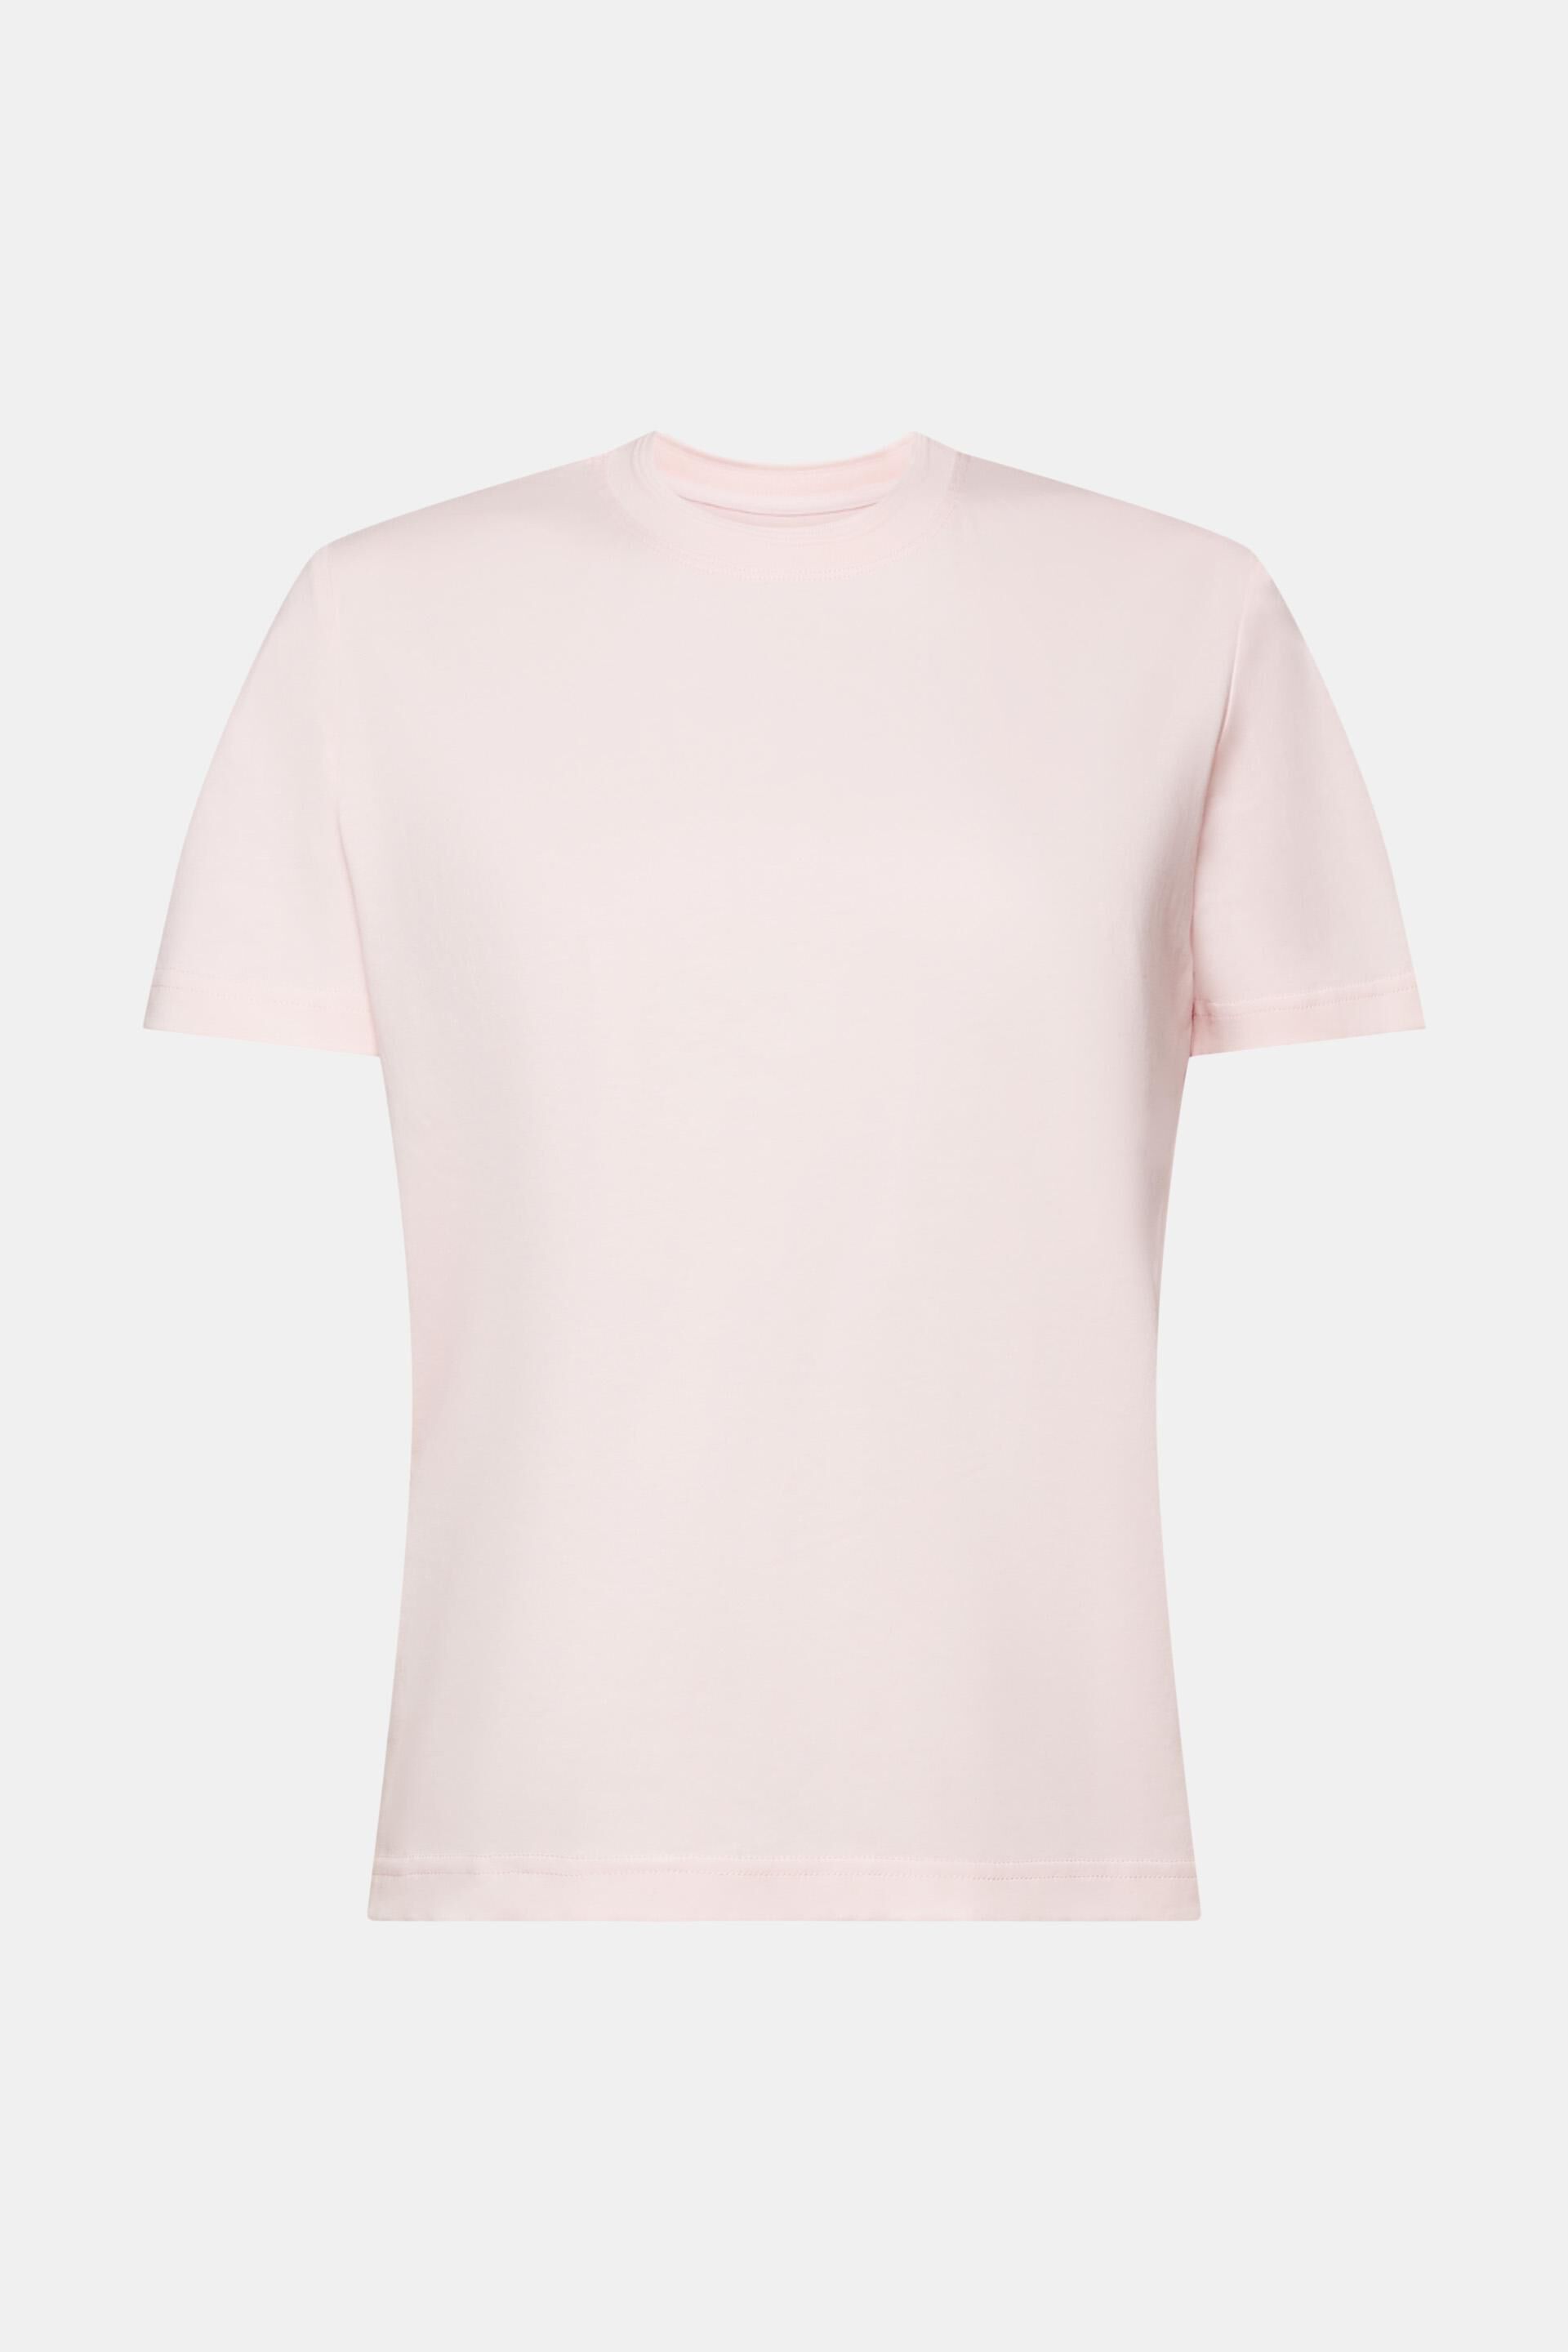 Esprit Damen T-Shirt mit 100 Rundhalsausschnitt, Baumwolle 